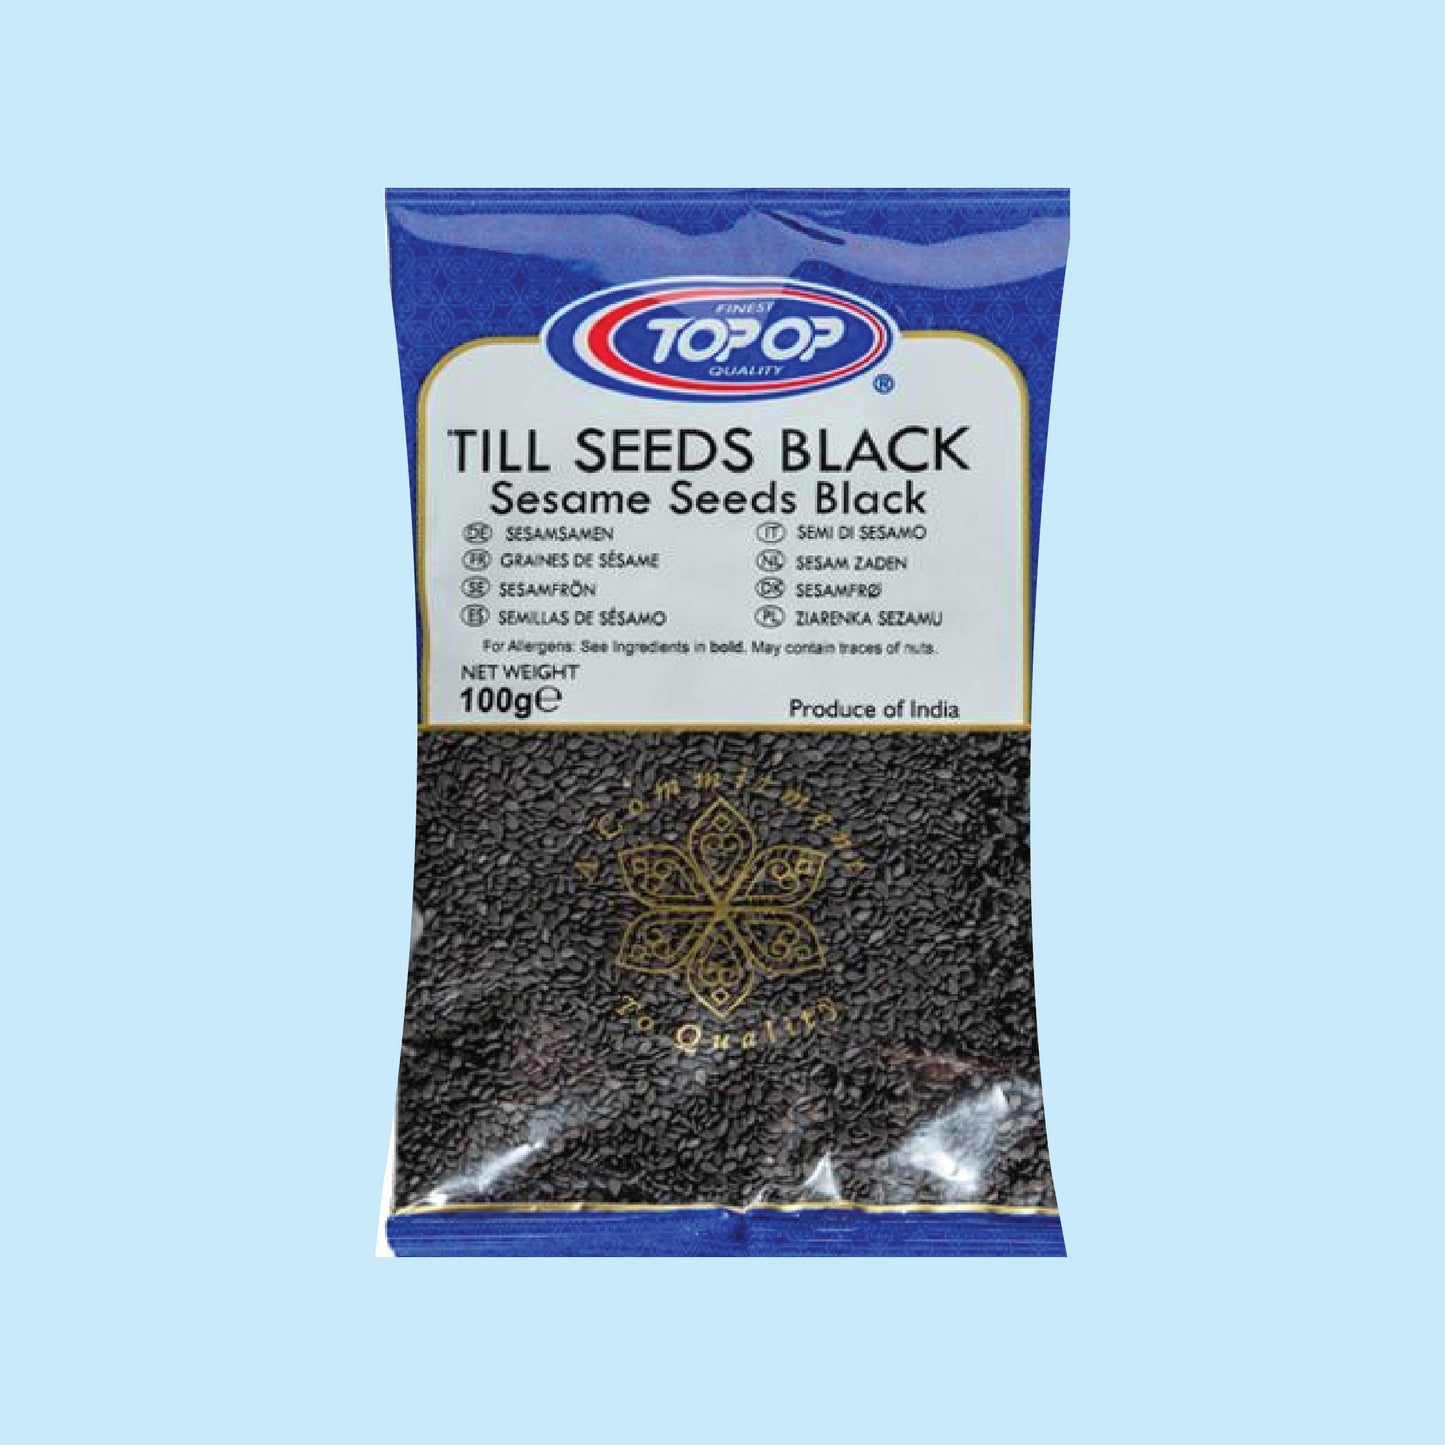 Top-Op Black Sesame Seeds (Till)